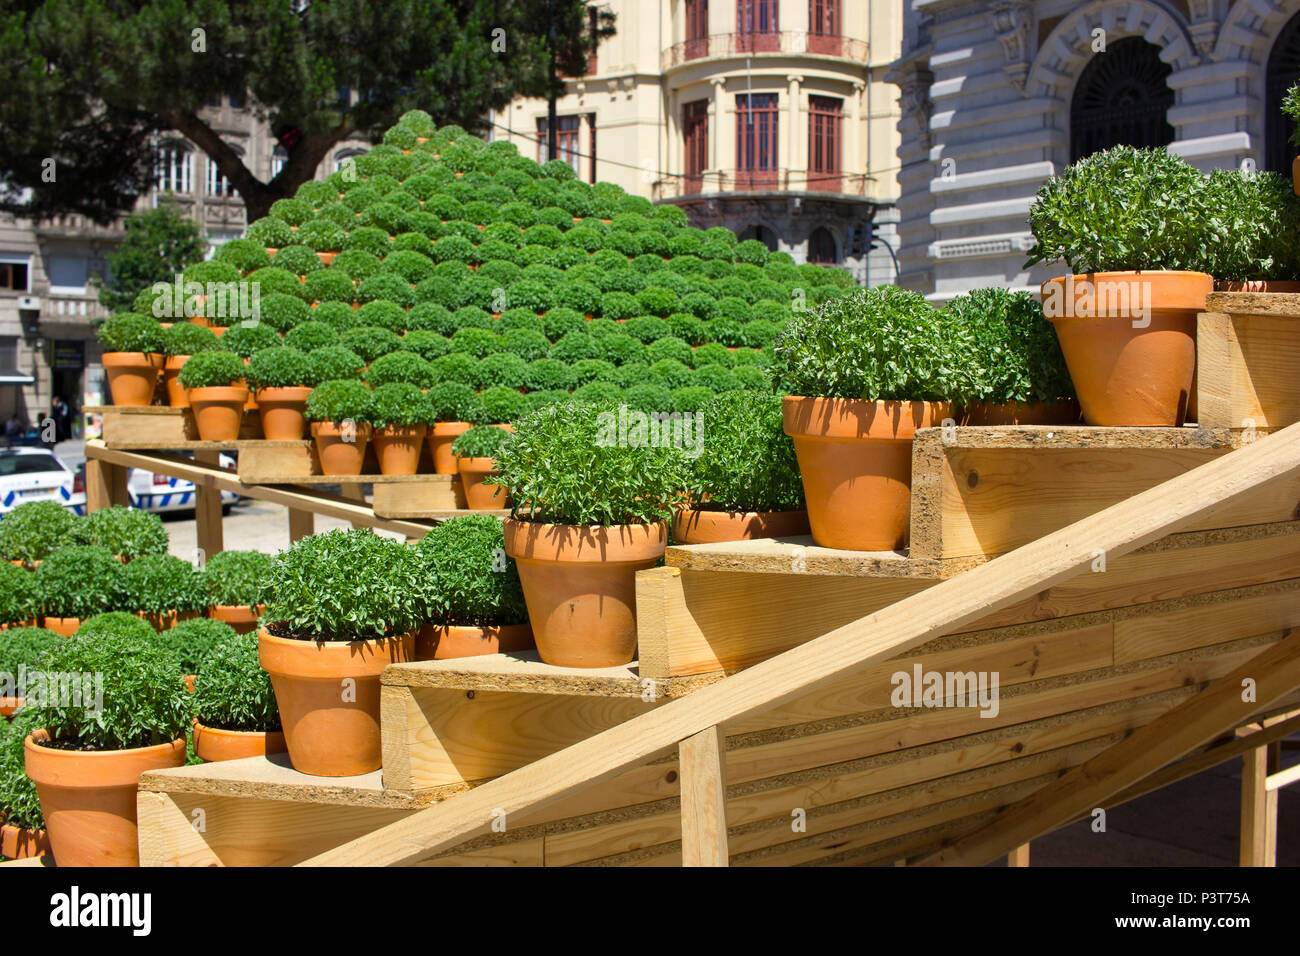 Topfpflanzen Basilikum Pflanzen traditionell als Geschenke oder verwendet das Haus in Porto um St. John's Eve (Festa de Sao Joao do Porto zu dekorieren). Hochsommer. Stockfoto